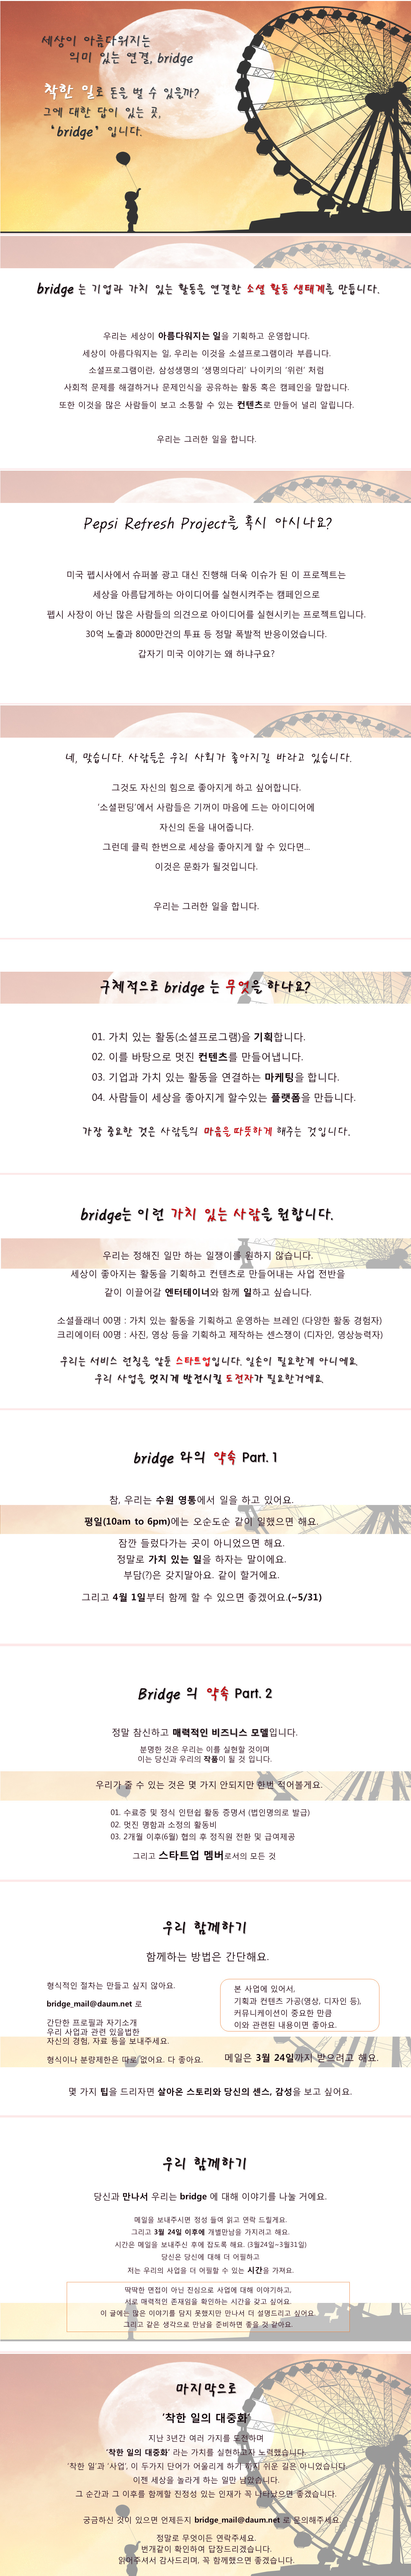 bridge 2nd.jpg